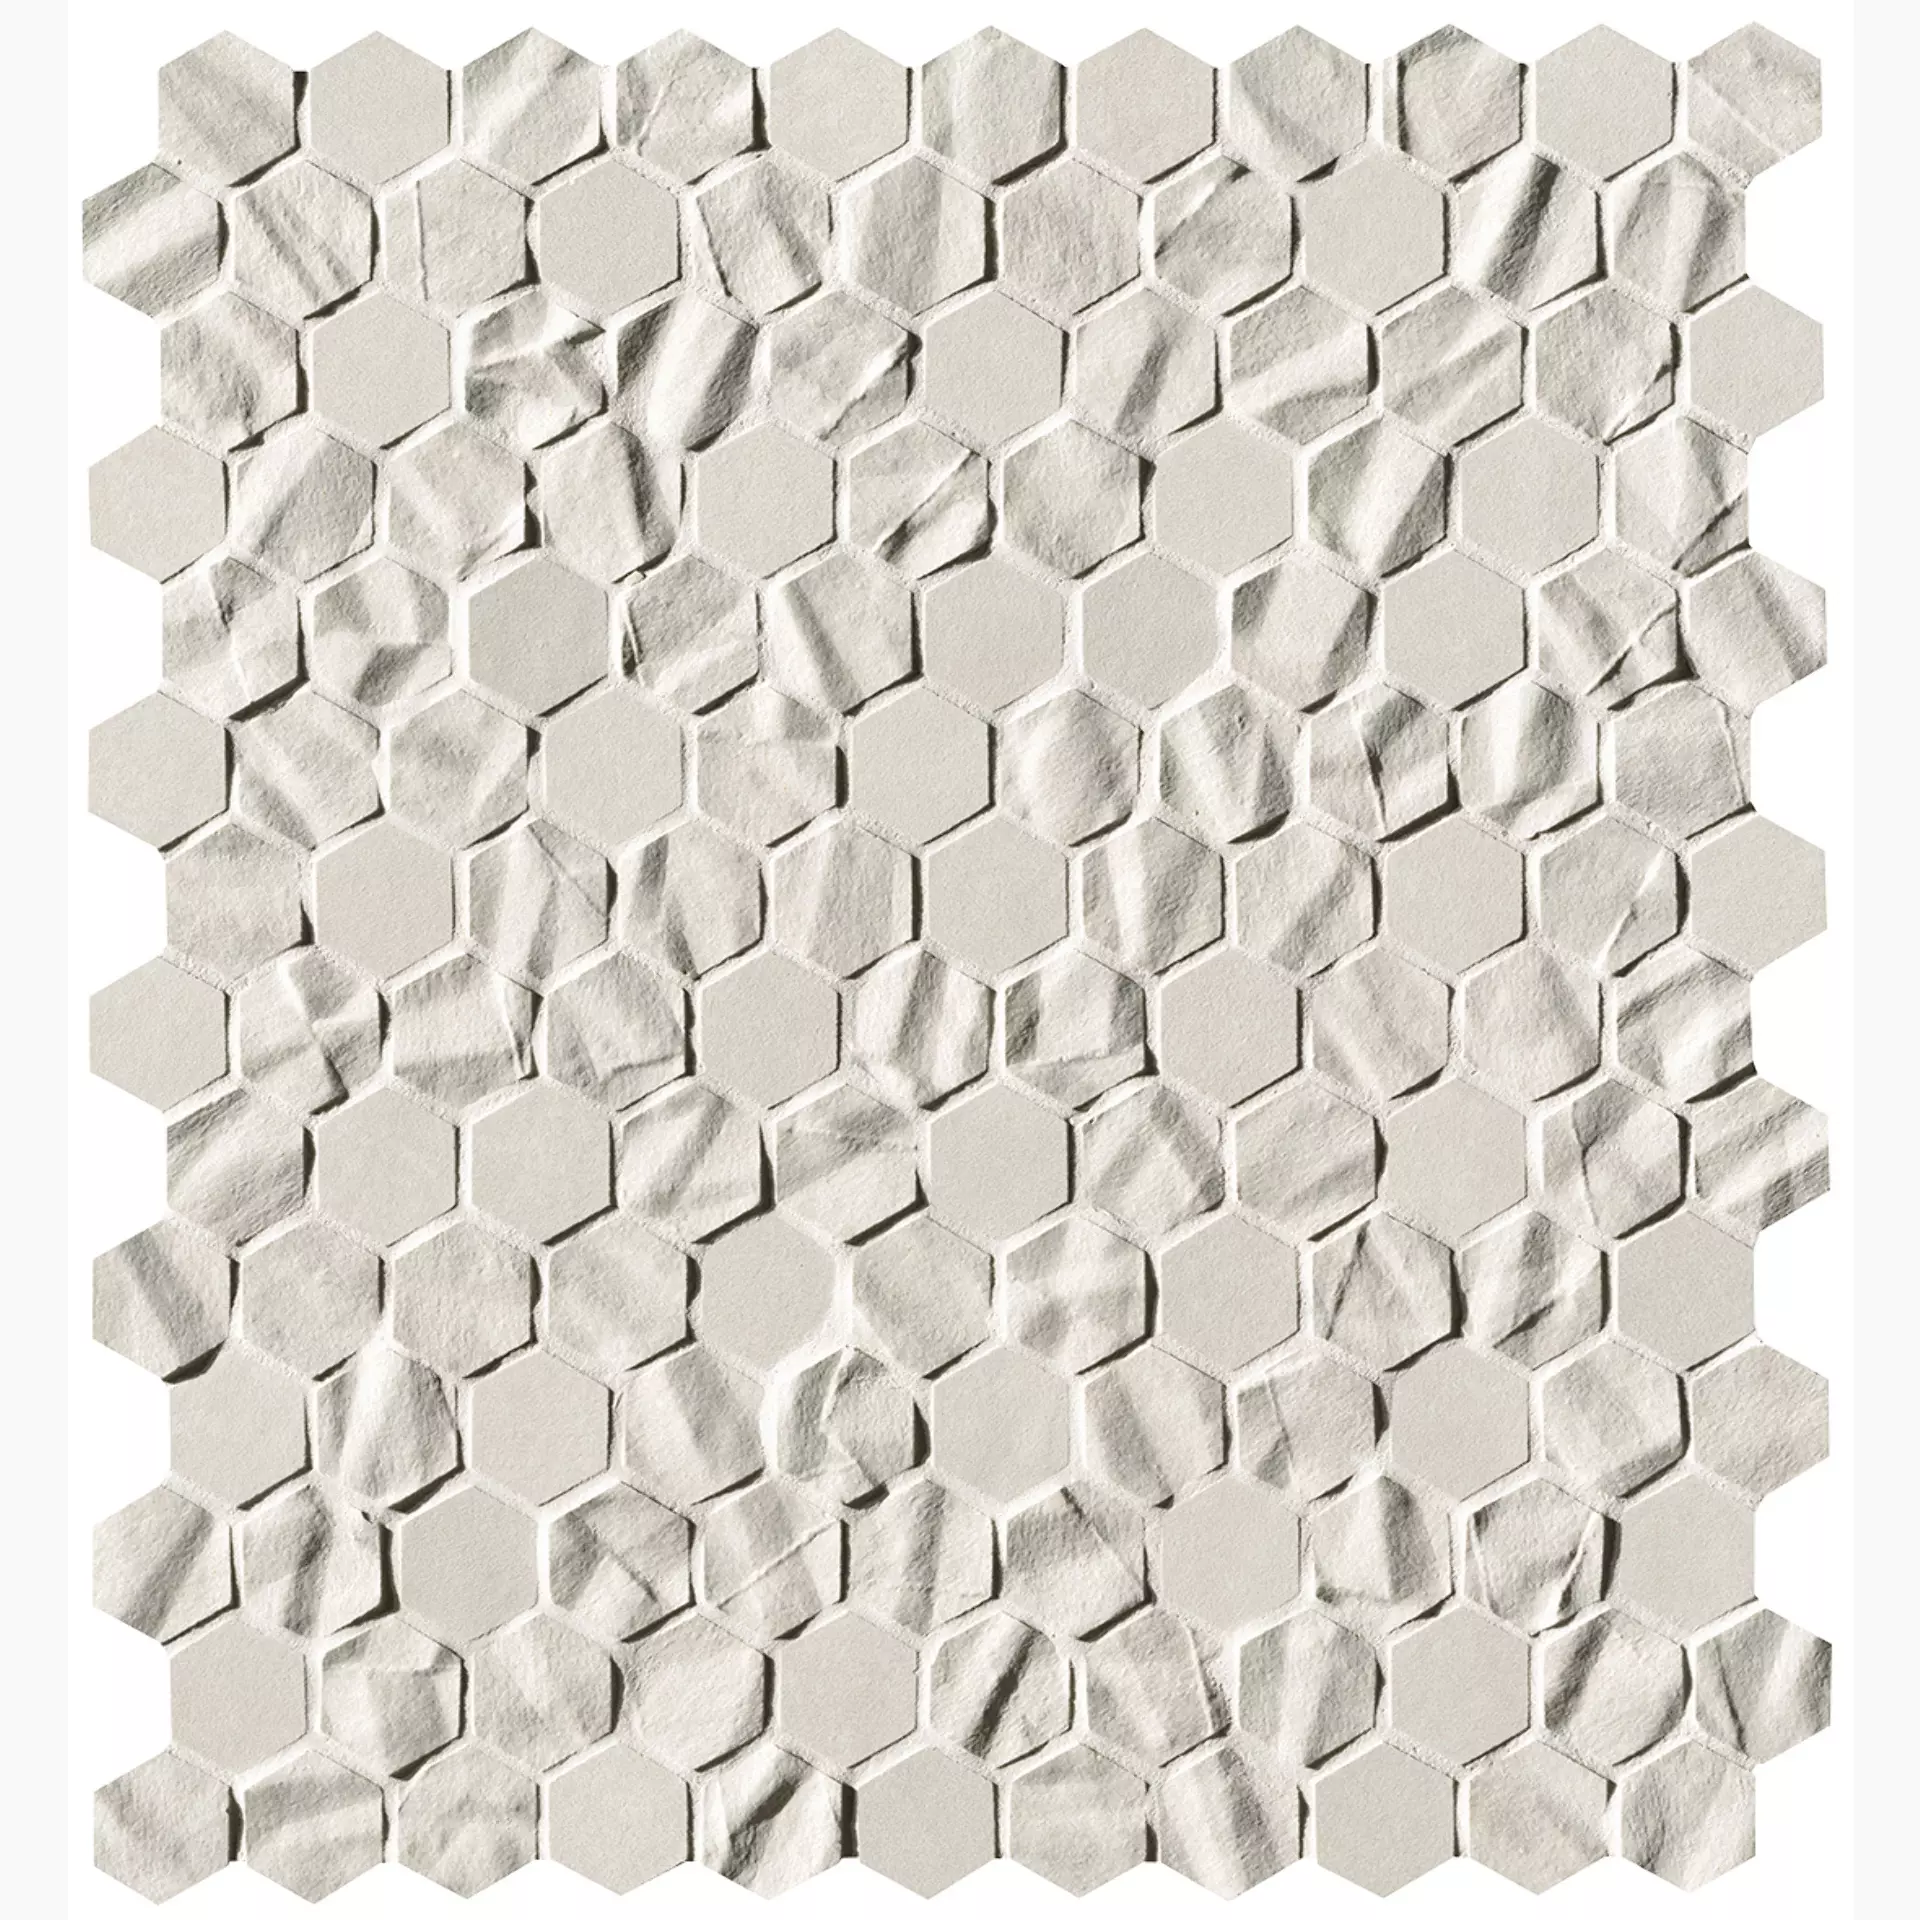 FAP Bloom White Struttura Matt White fOYZ matt struktur 29,5x35cm Mosaik Hexagon Star